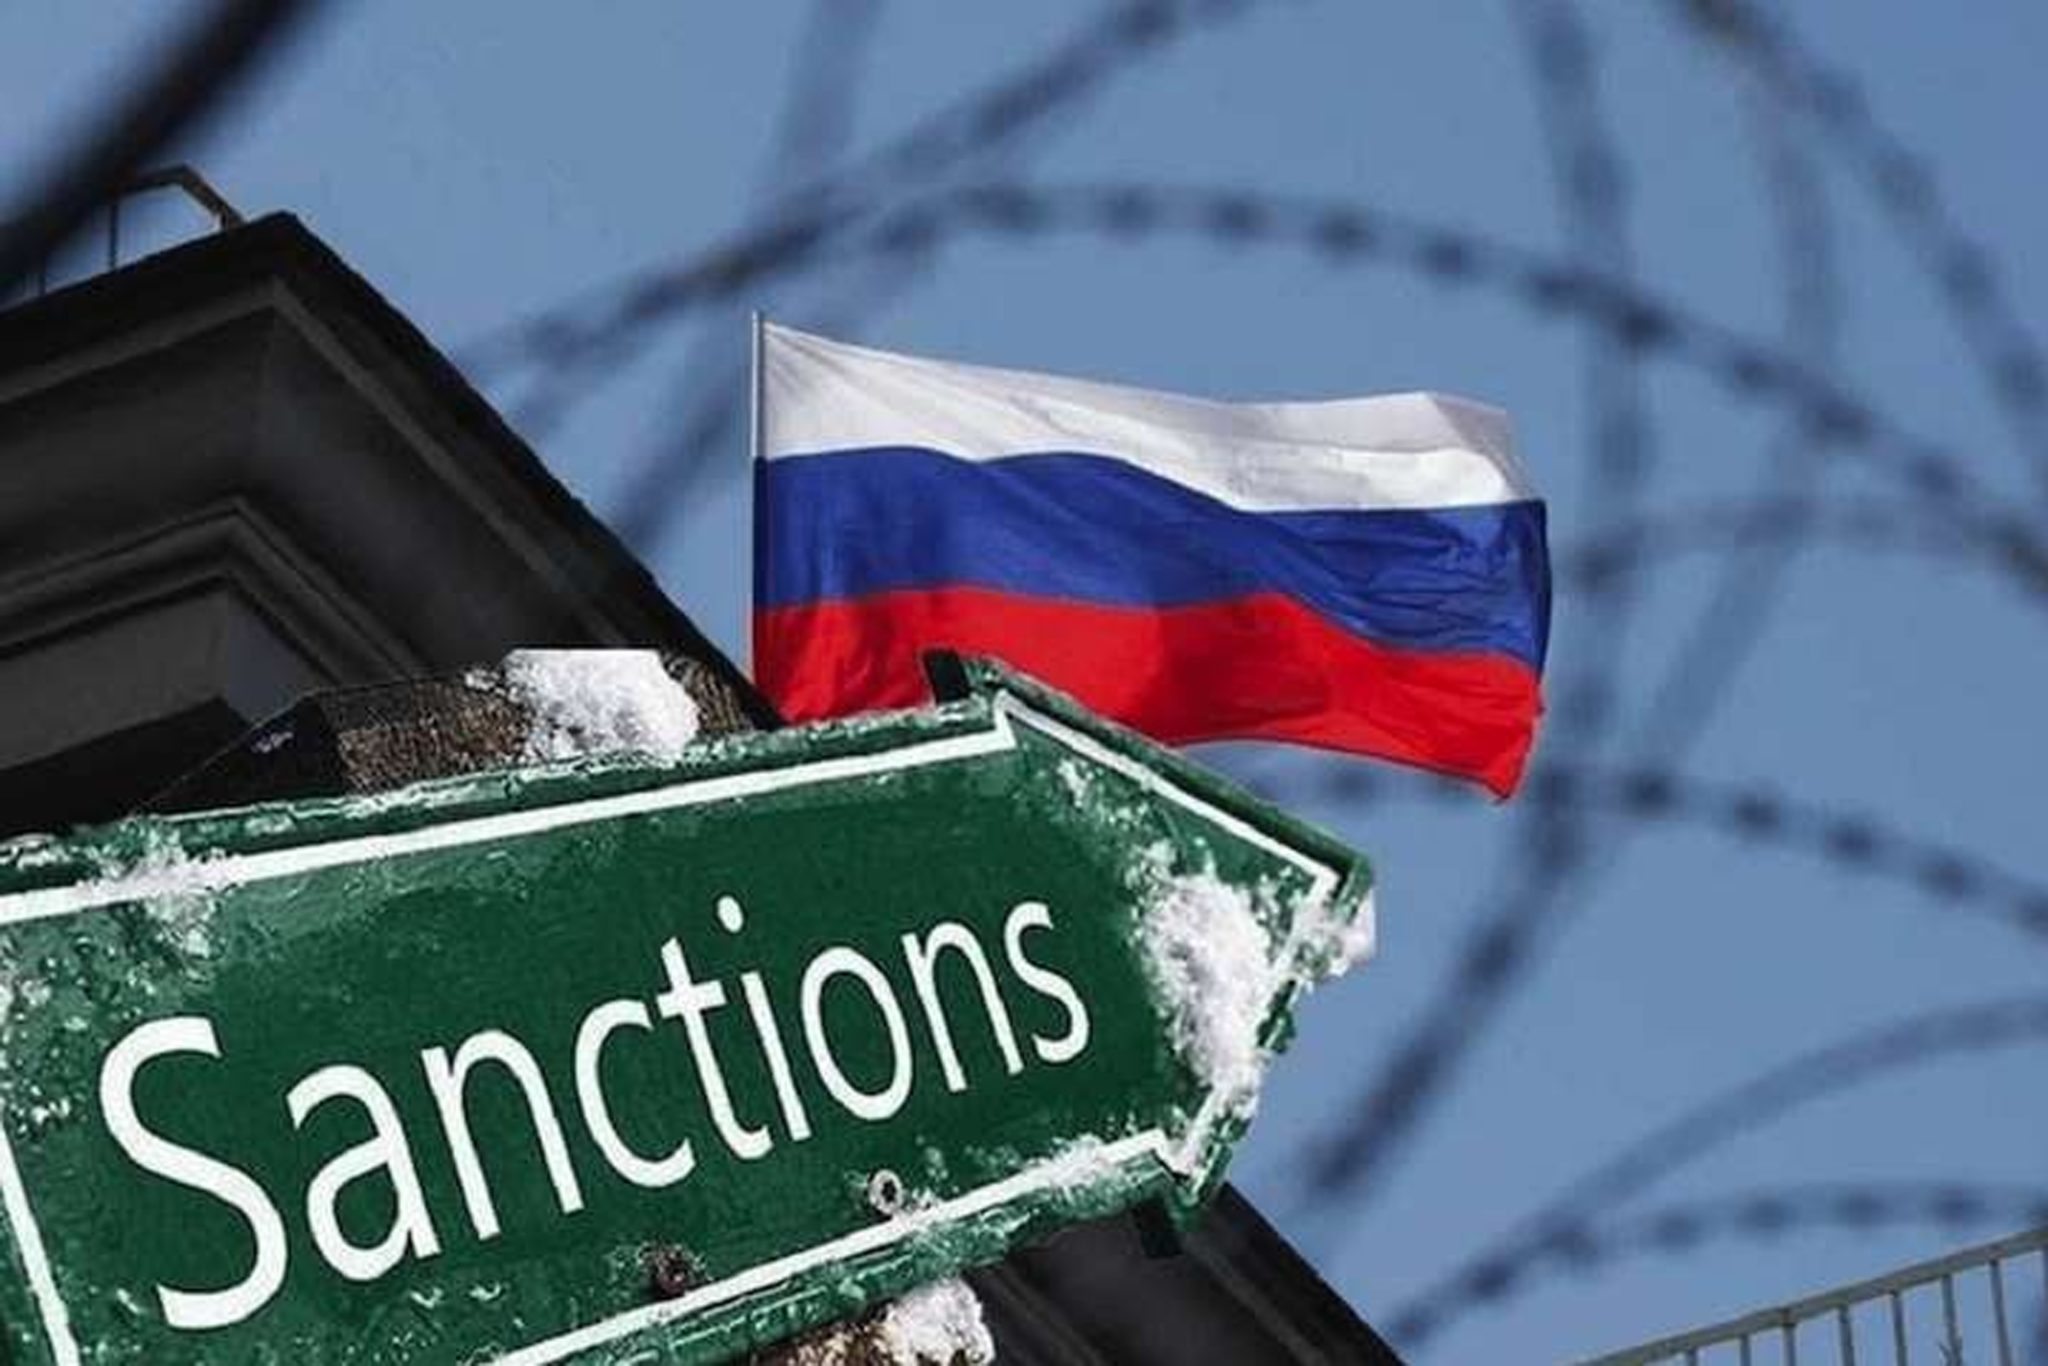 Քննարկվում է Ռուսաստանի դեմ Արևմուտքի կողմից կիրառվող պատժամիջոցները չխախտելու նկատմամբ հսկողությունը խստացնելու հարցը․ Նիկոլ Փաշինյան